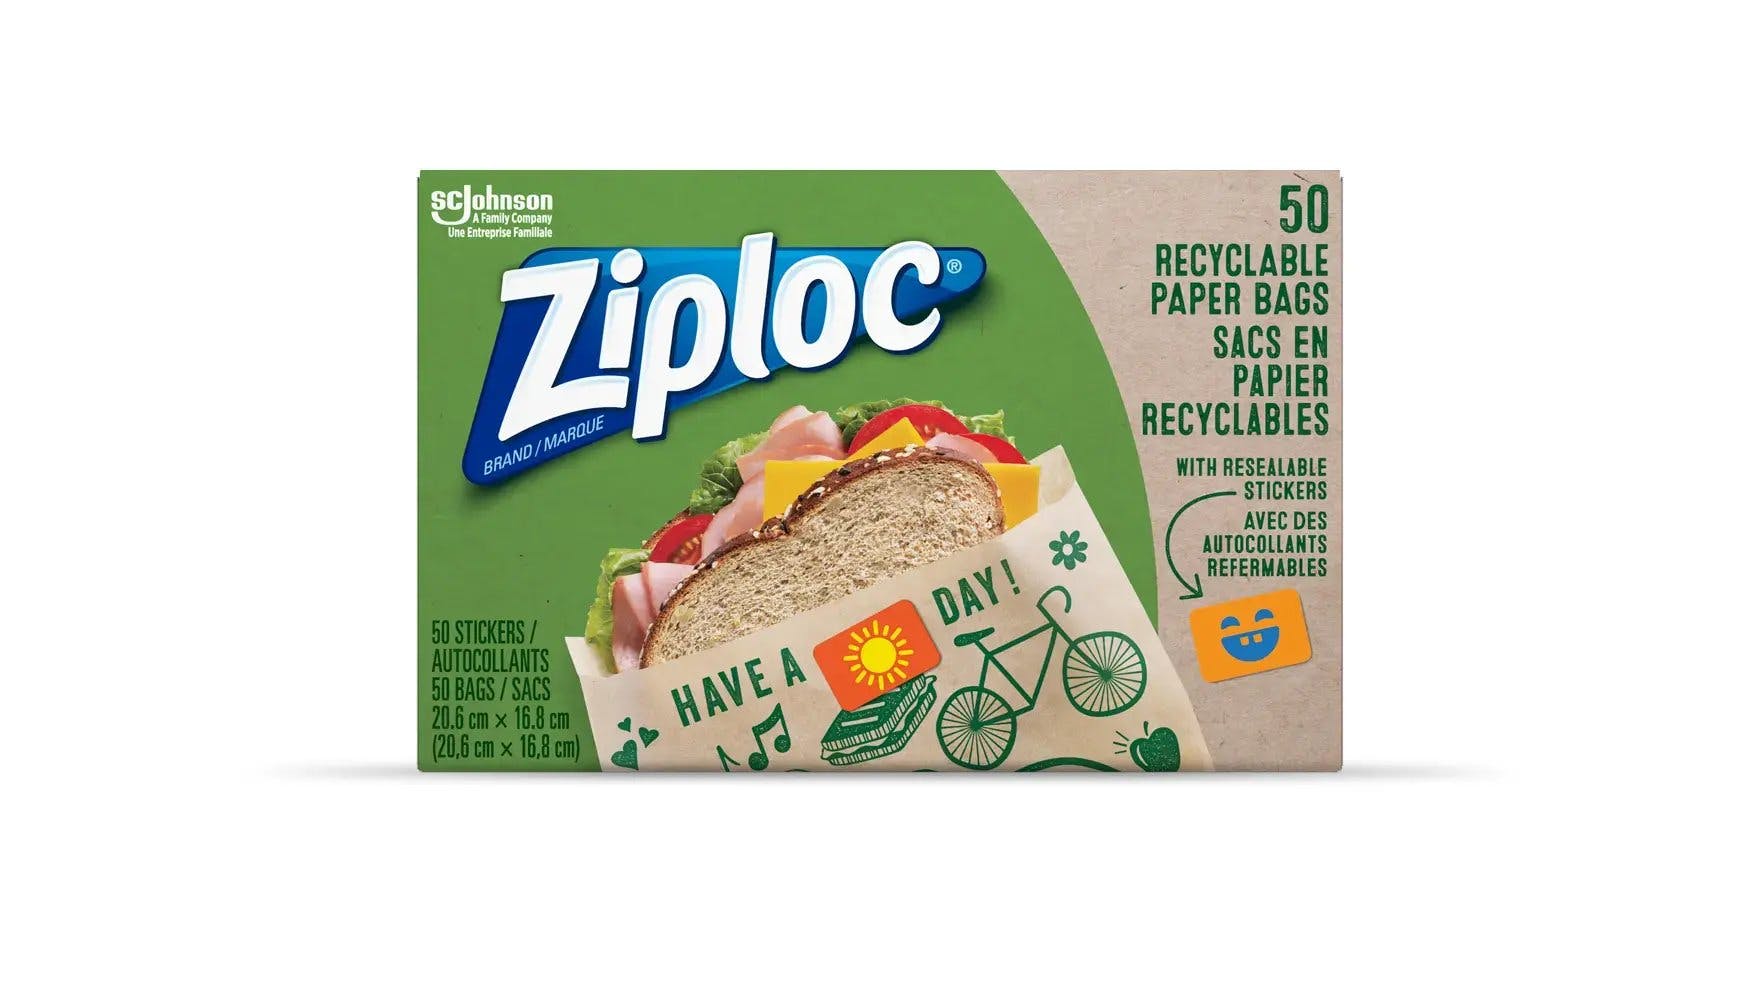 Devant de la boîte de sacs en papier recyclables Ziploc.